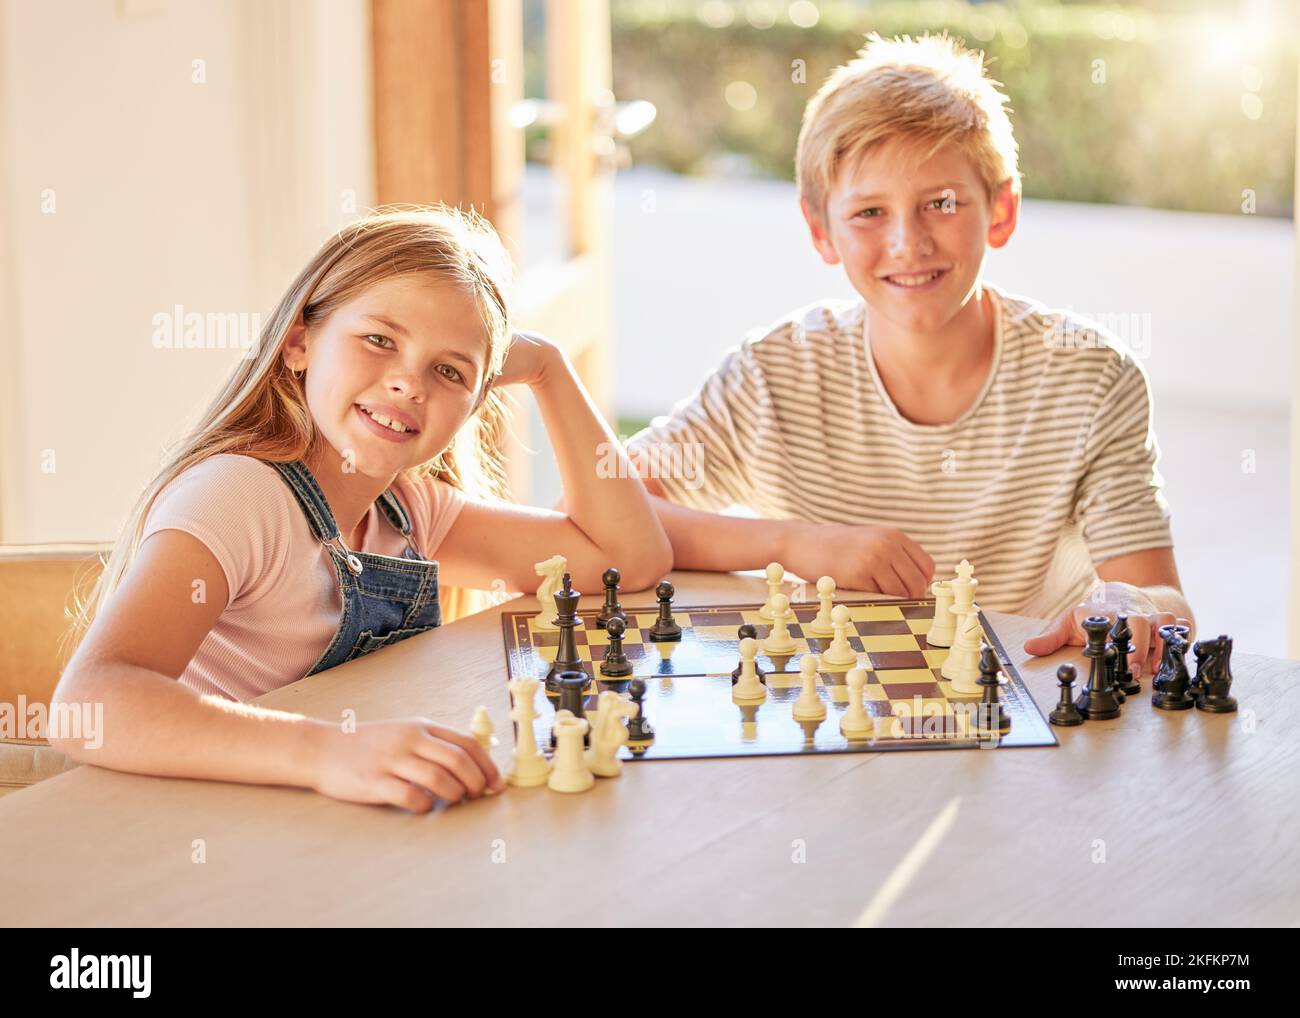 Portrait, échecs et enfants se détendre à une table avec jeu de société, lien et l'apprentissage dans un salon dans leur maison. Enfants, échiquier et activité cérébrale Banque D'Images